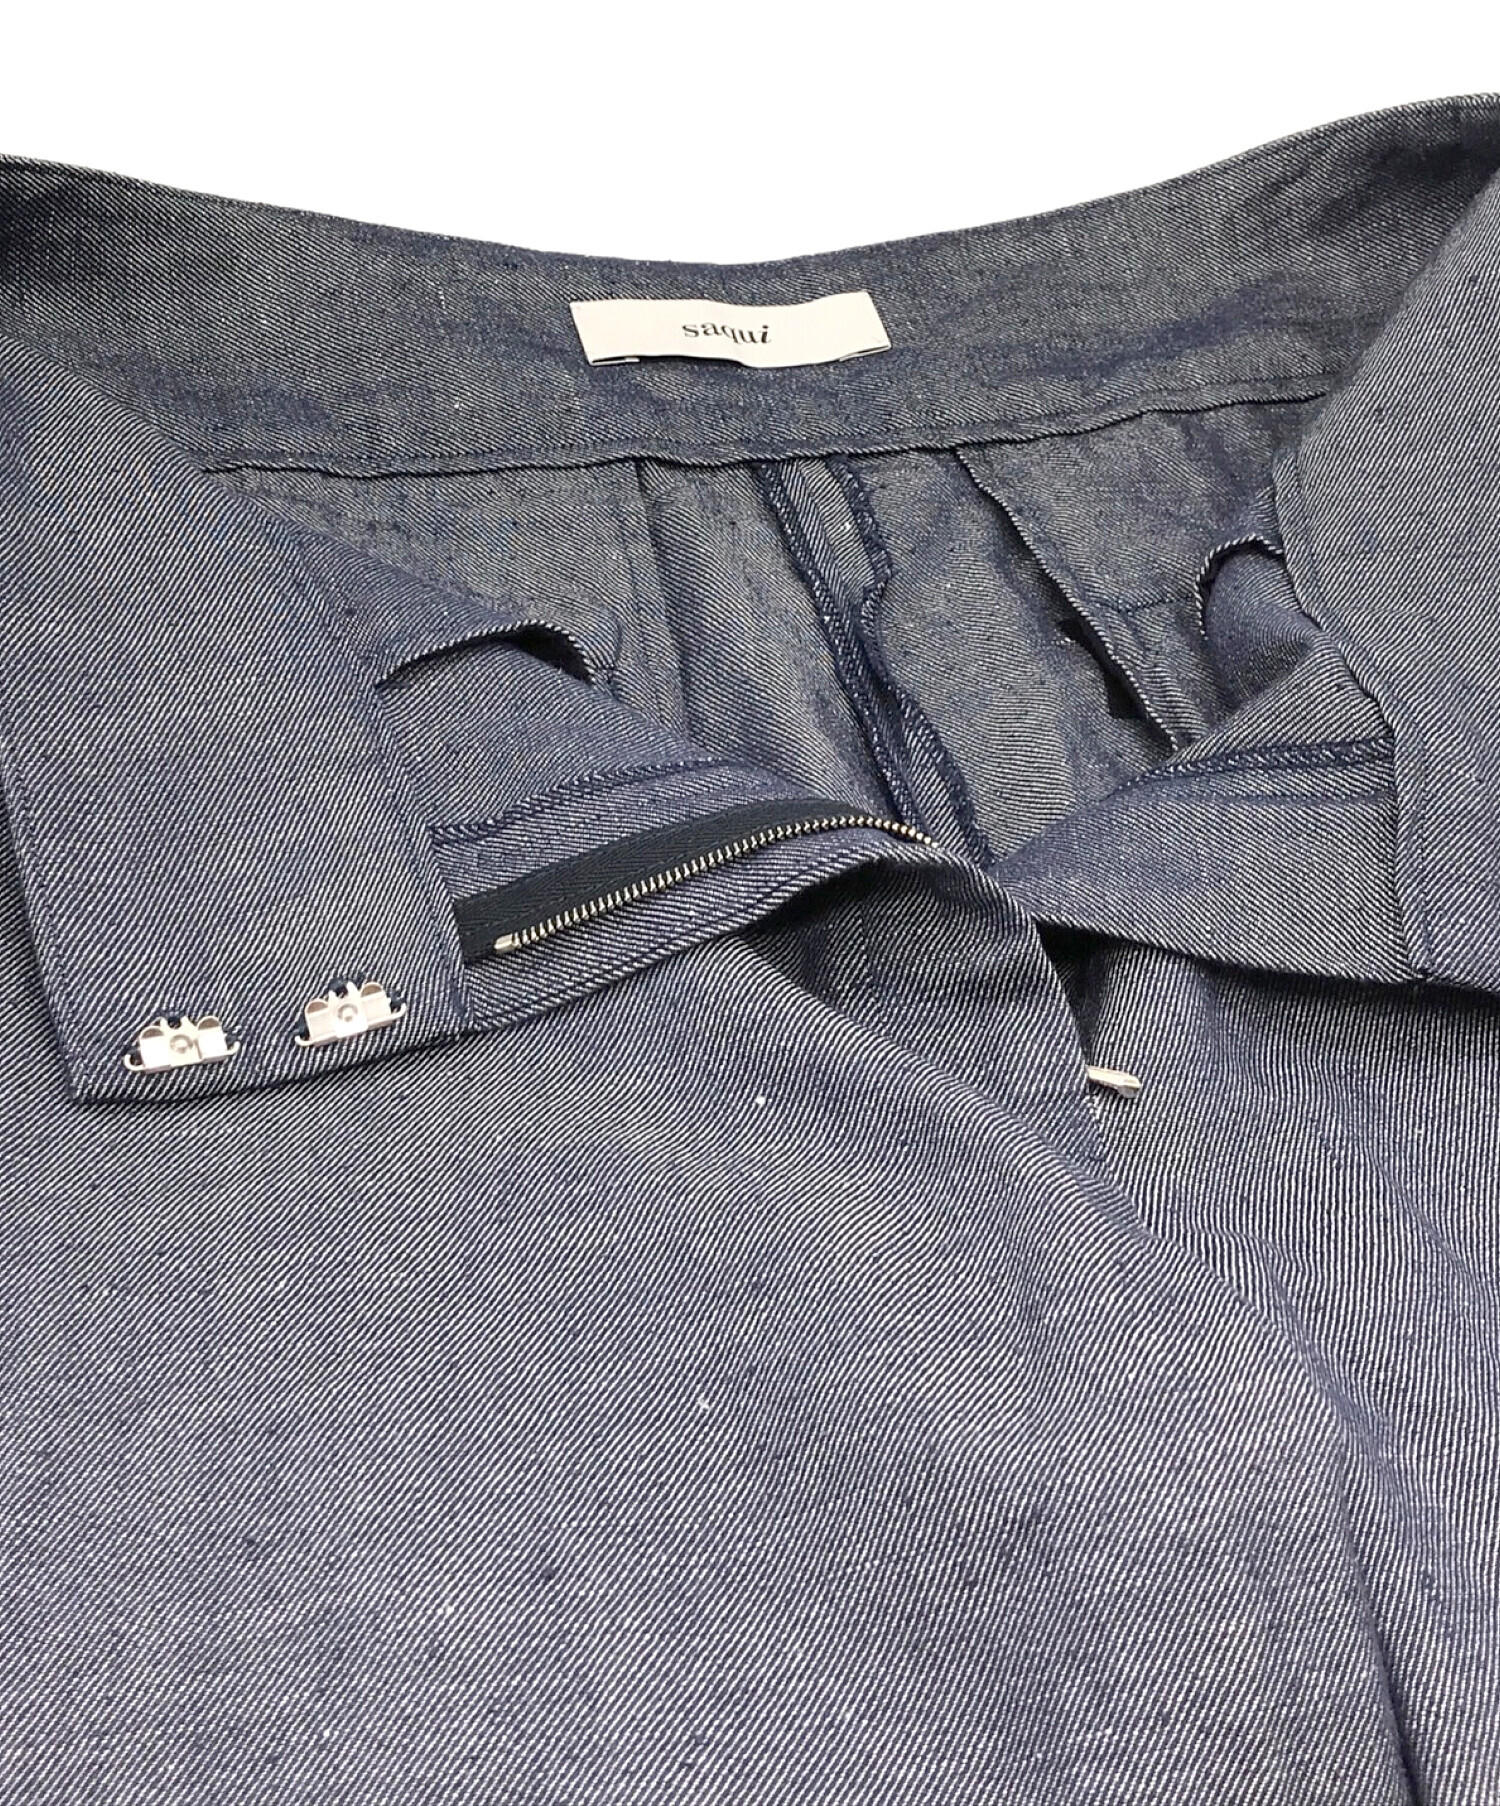 saqui (サキ) パンツ ブルー サイズ:40